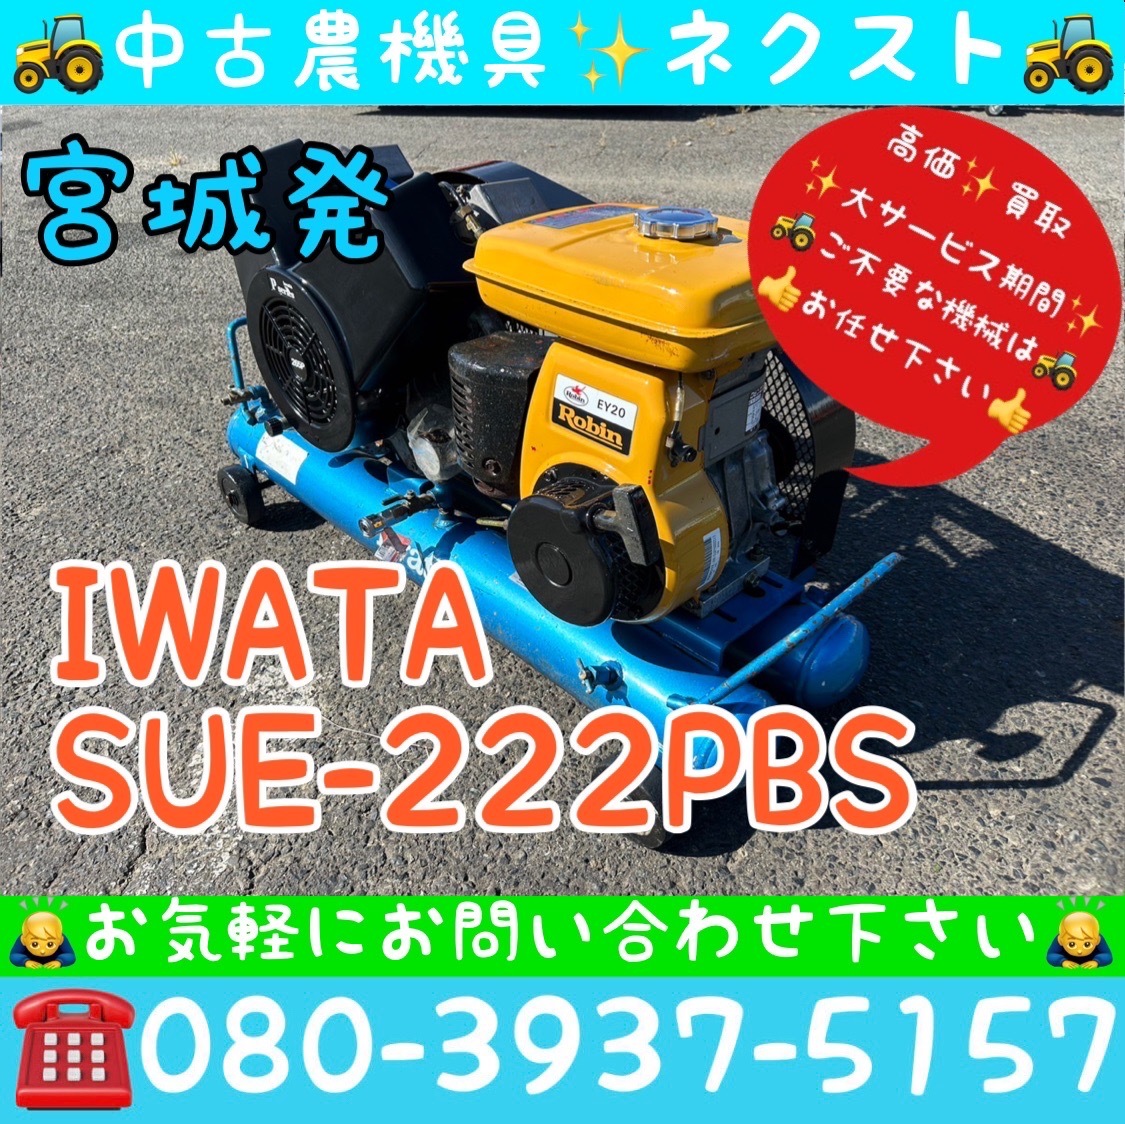 イワタ IWATA SUE-222PBS リコイル式 コンプレッサー 宮城発